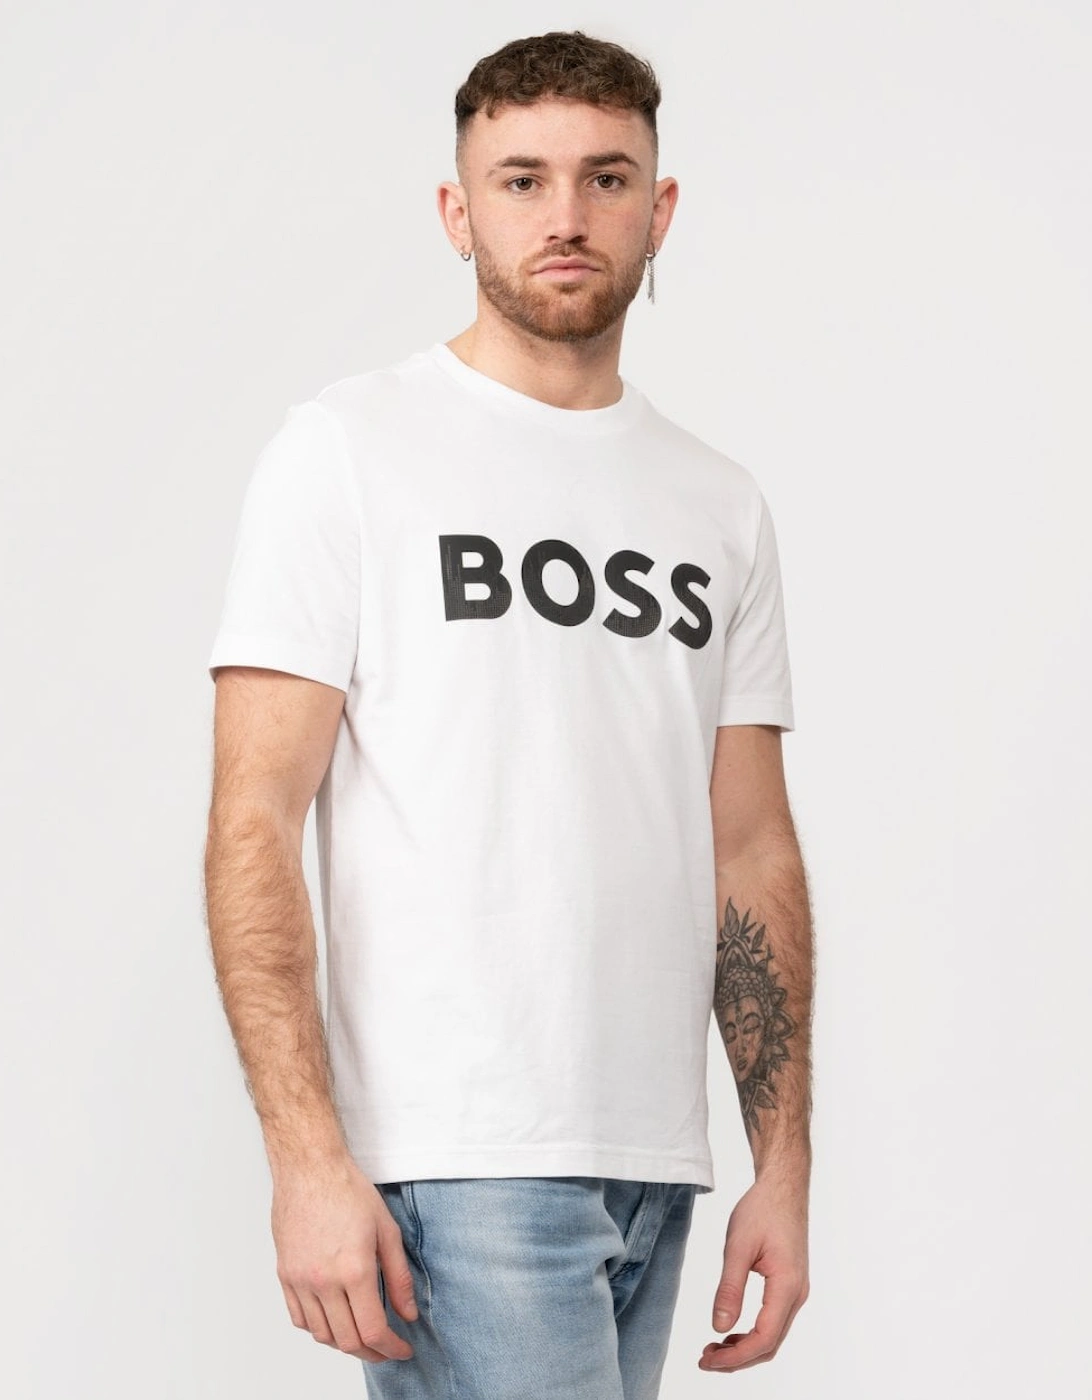 BOSS Green Tee Mirror 1 Mens T-Shirt, 5 of 4